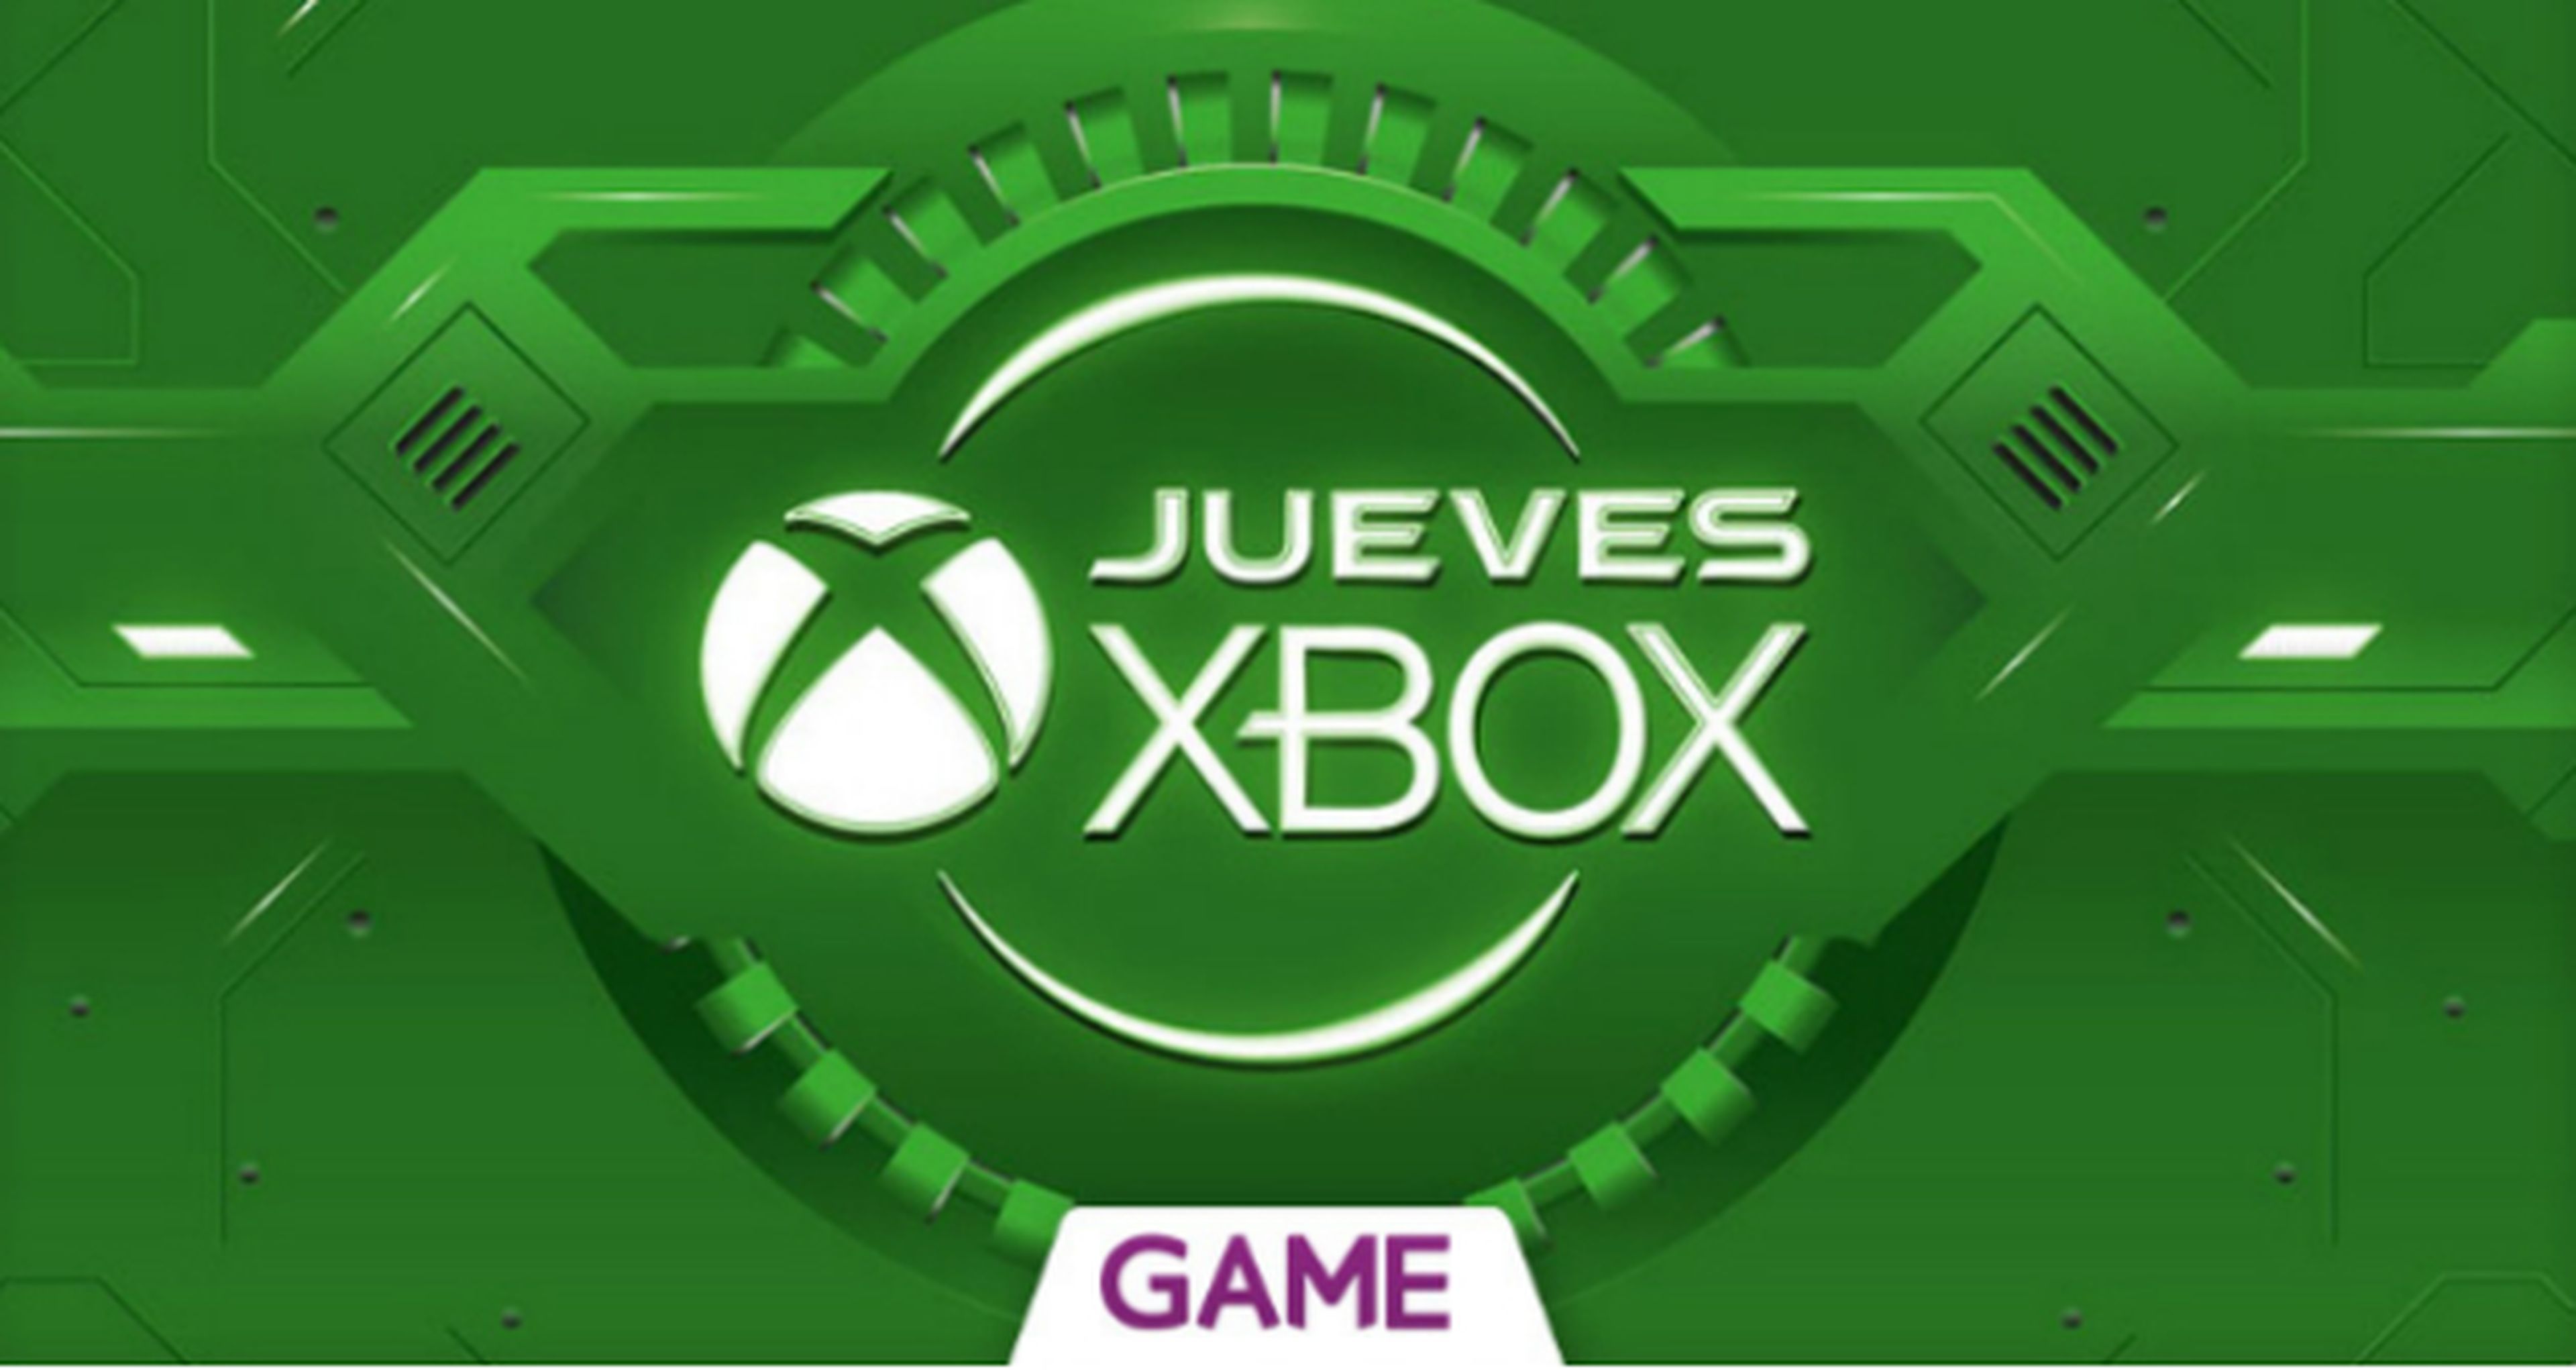 Jueves Xbox en GAME: Ofertas del 3/12/2015